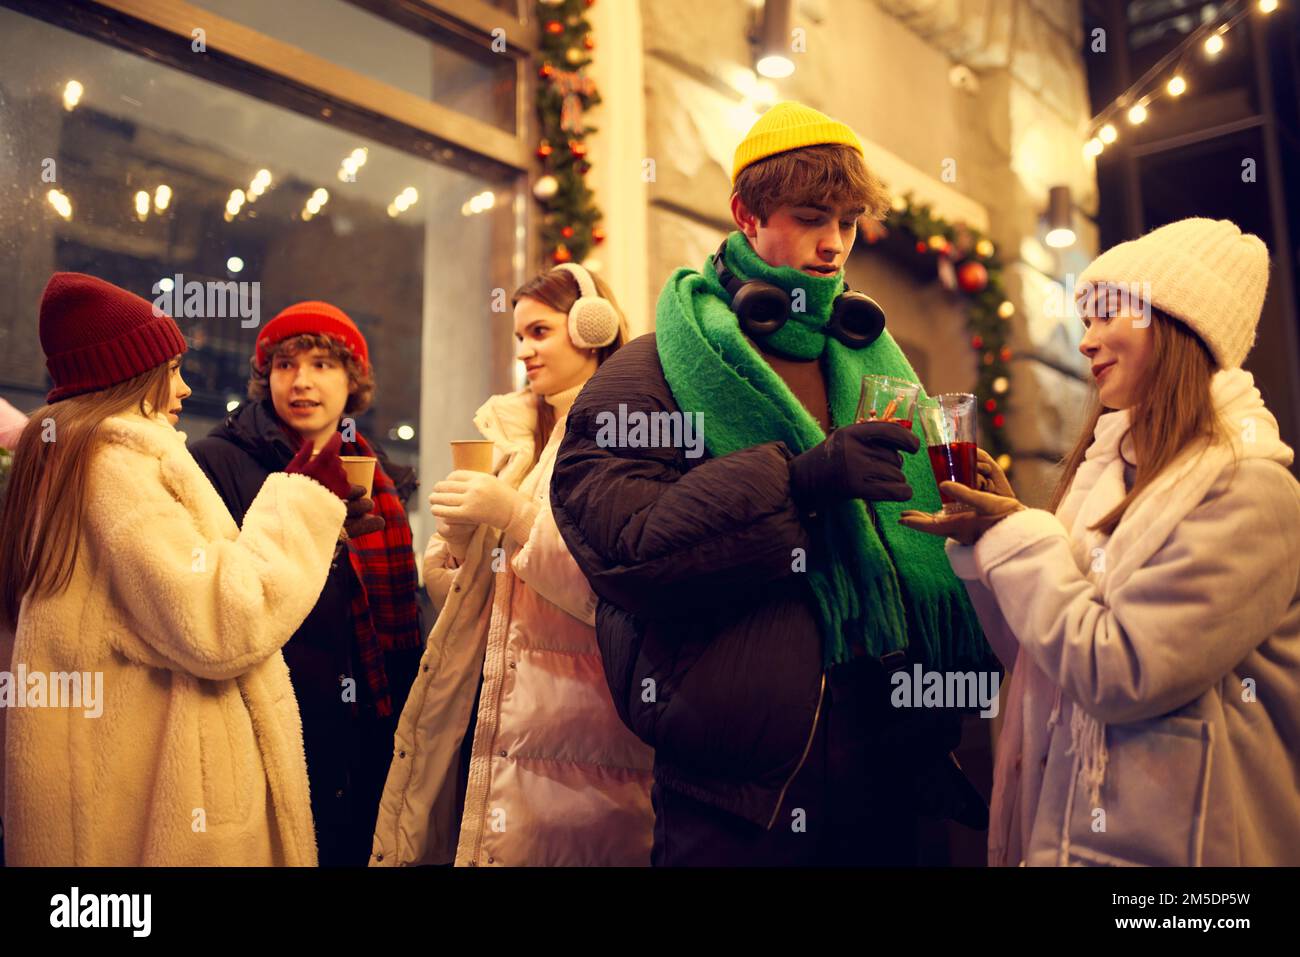 Groupe de jeunes, garçons et filles qui passent du temps ensemble dans une rue de Noël festive, goûtant du vin chaud et du café. Concept de l'hiver Banque D'Images